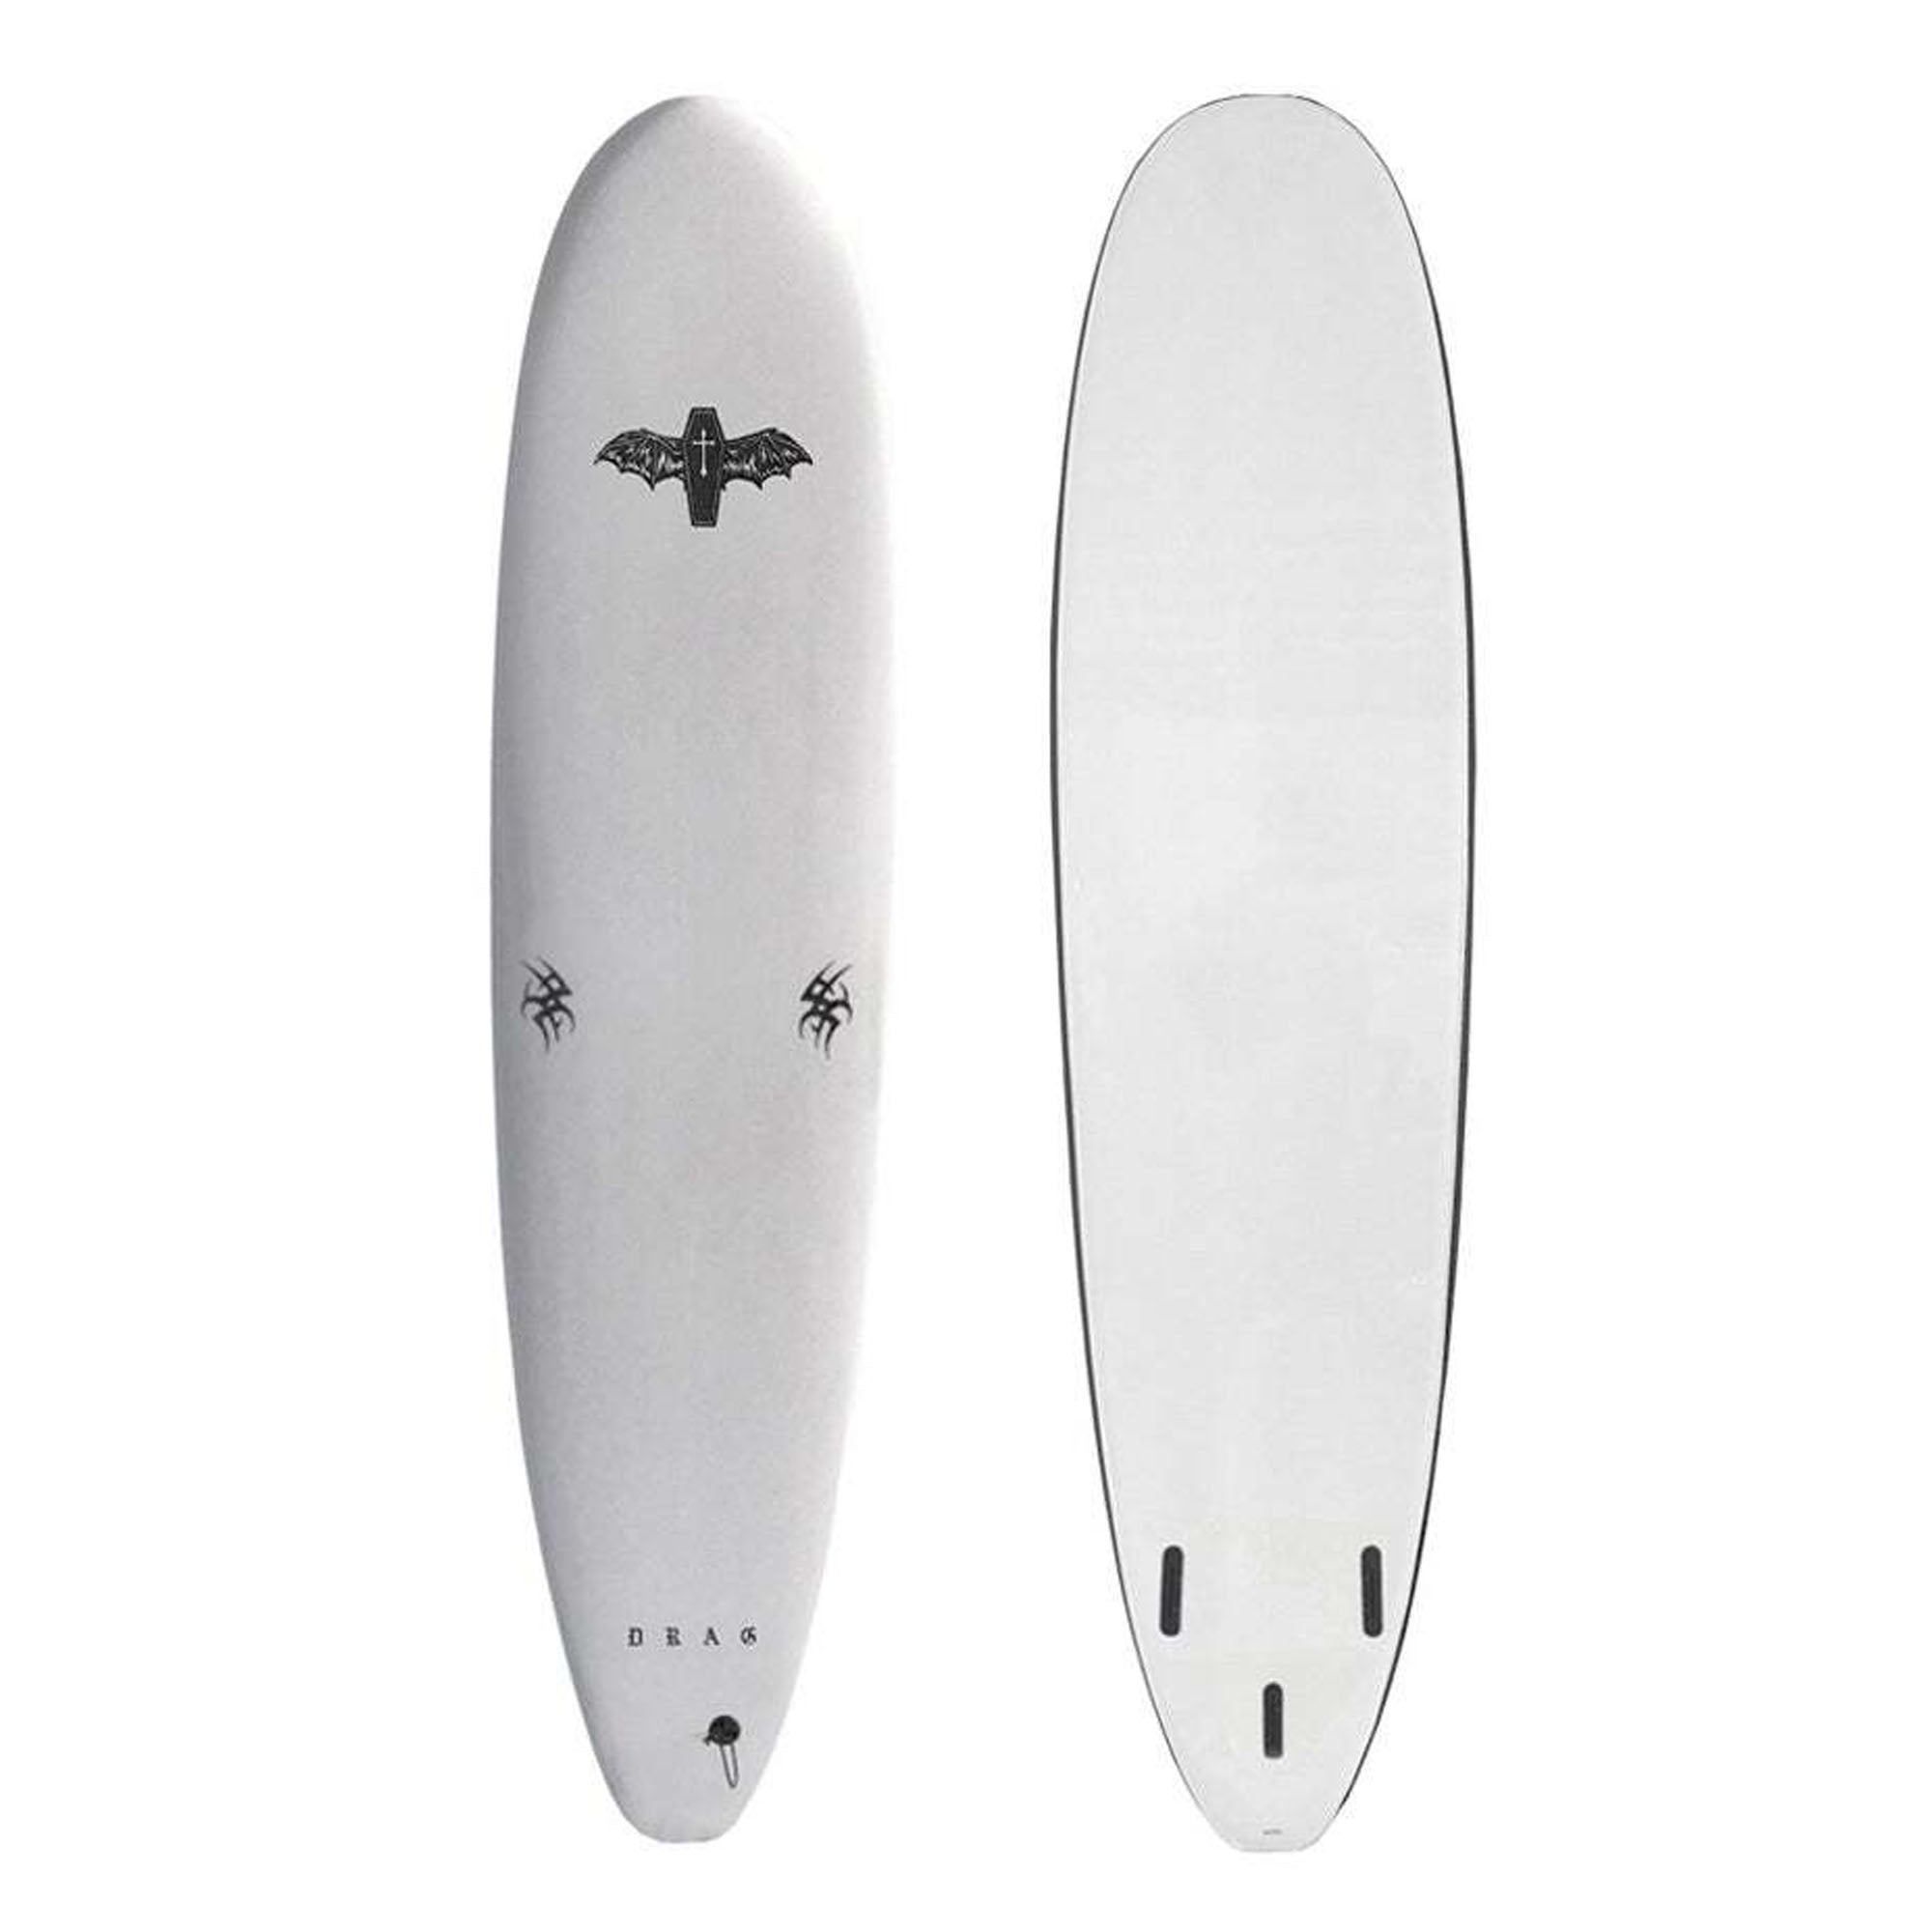 Drag Coffin 8'0 Single Fin Soft Surfboard